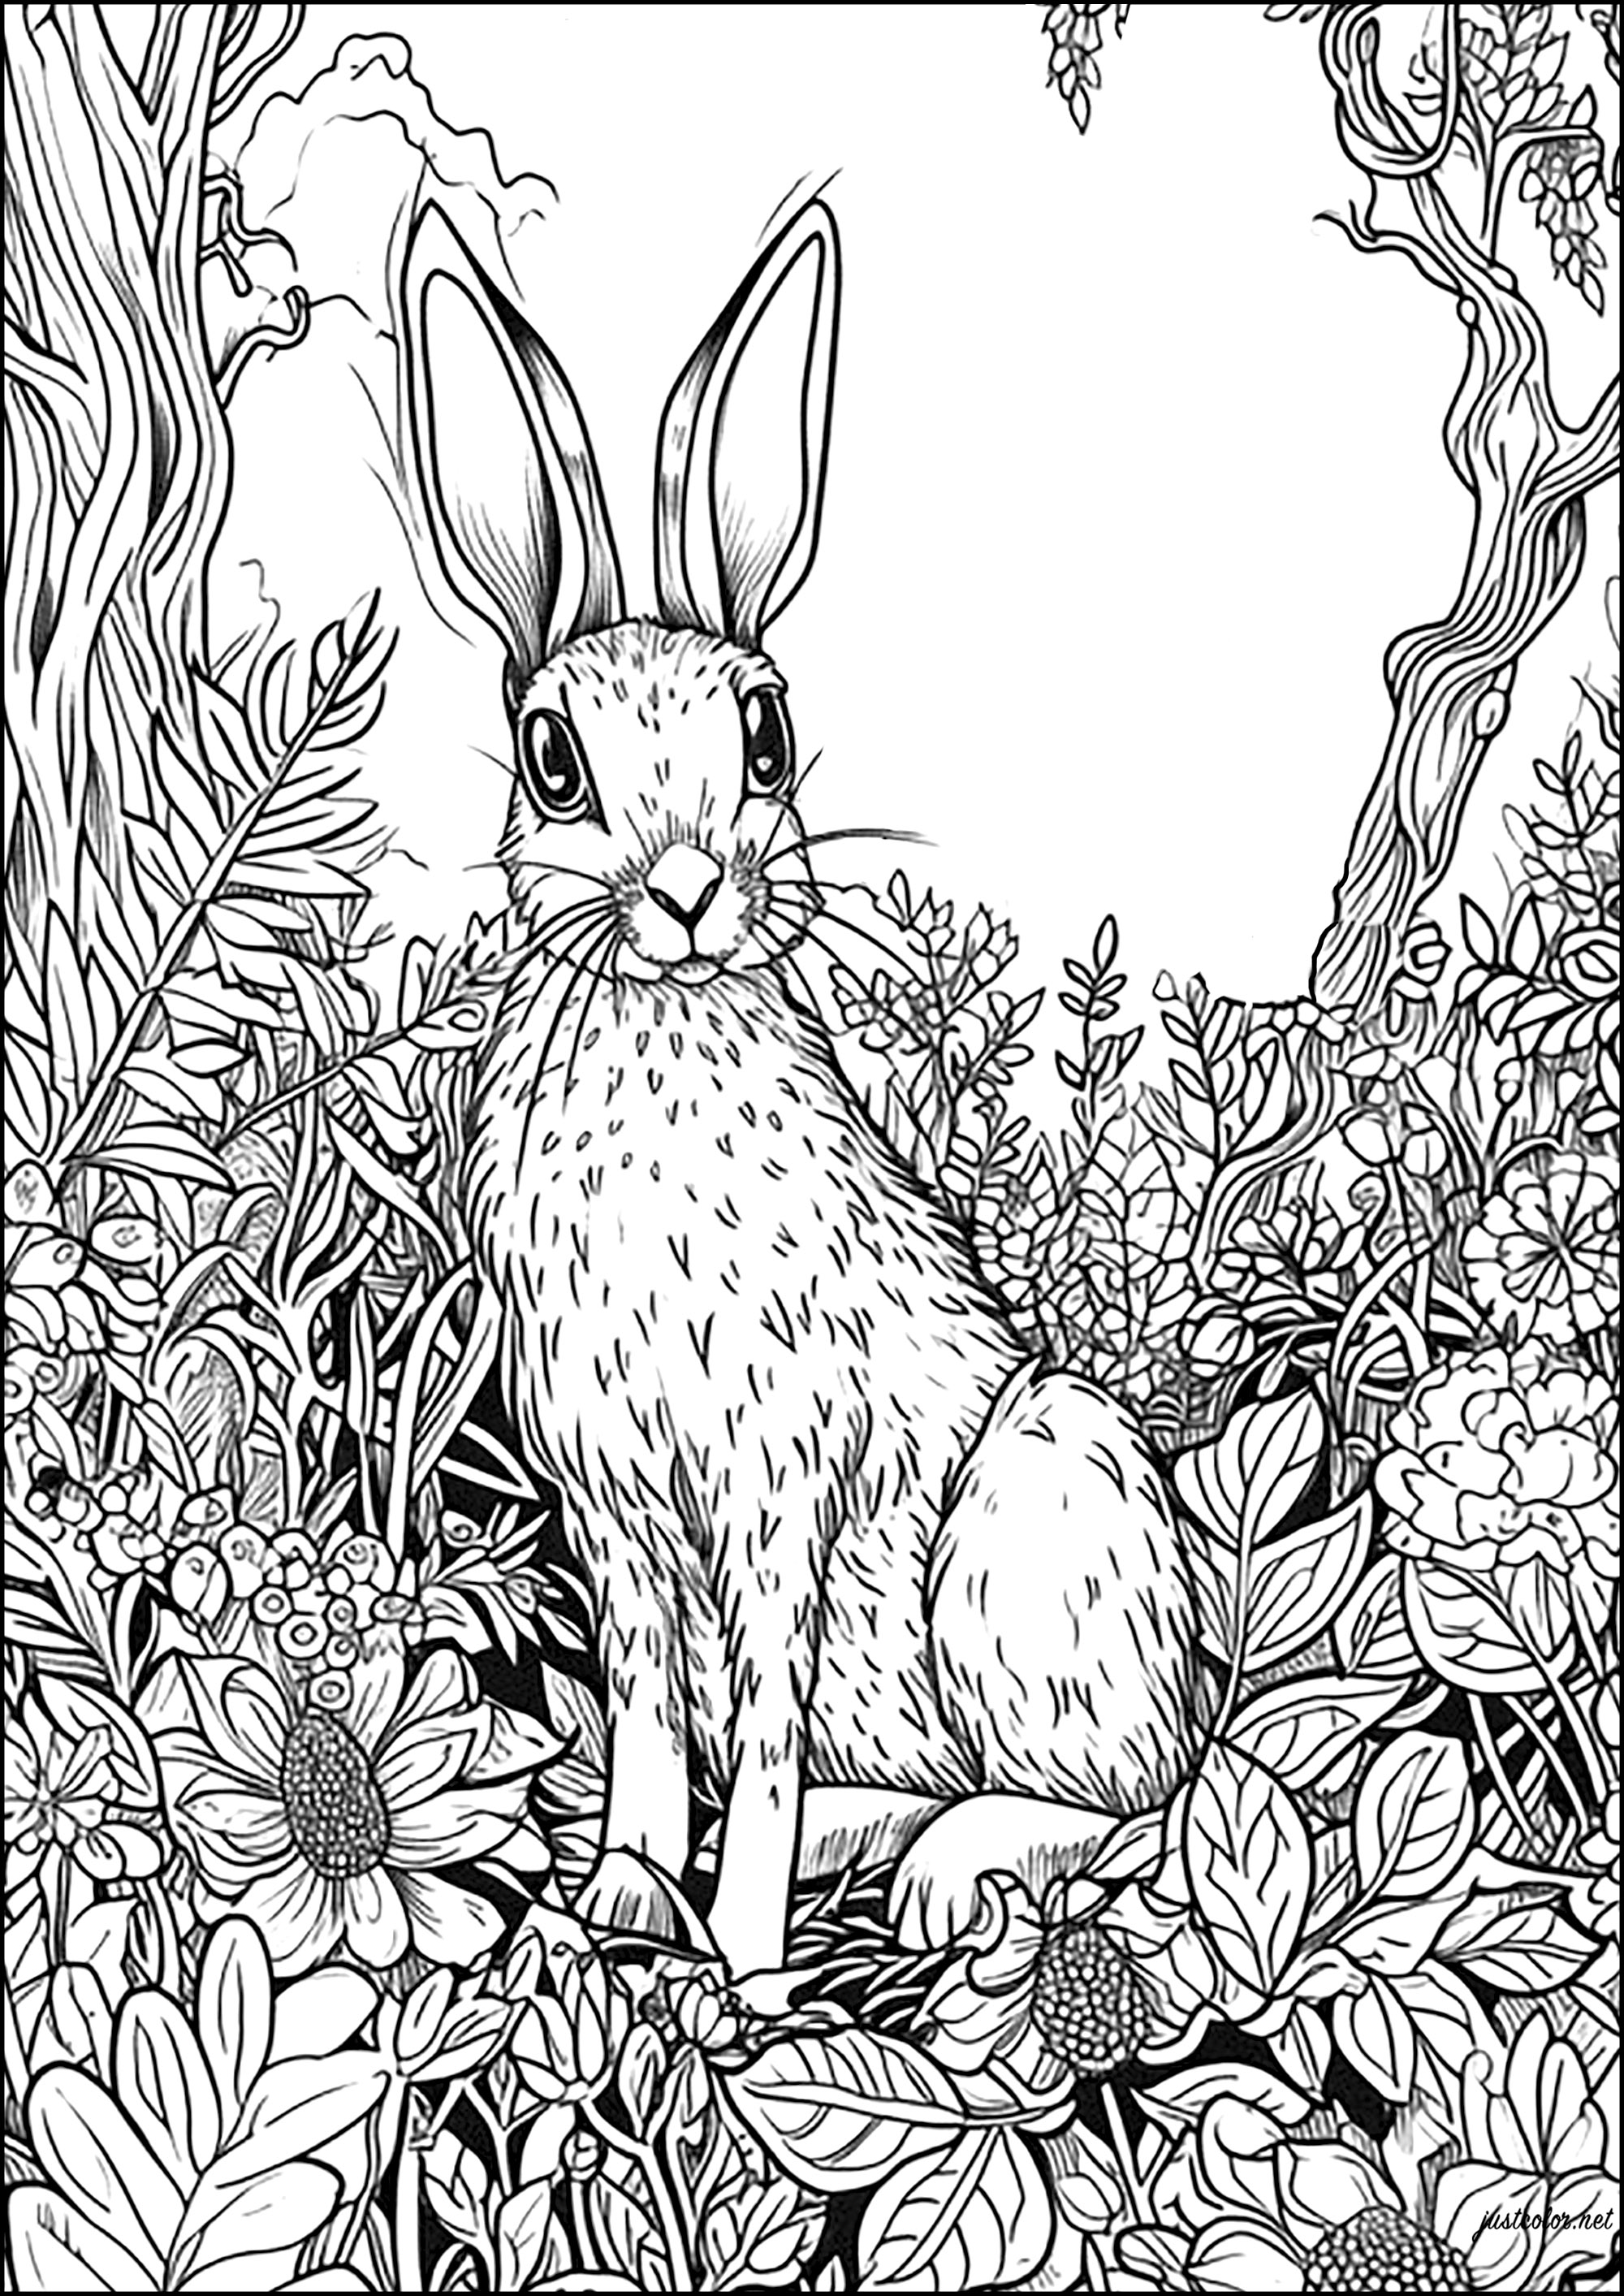 Gran conejo vigilante entre flores y hojas